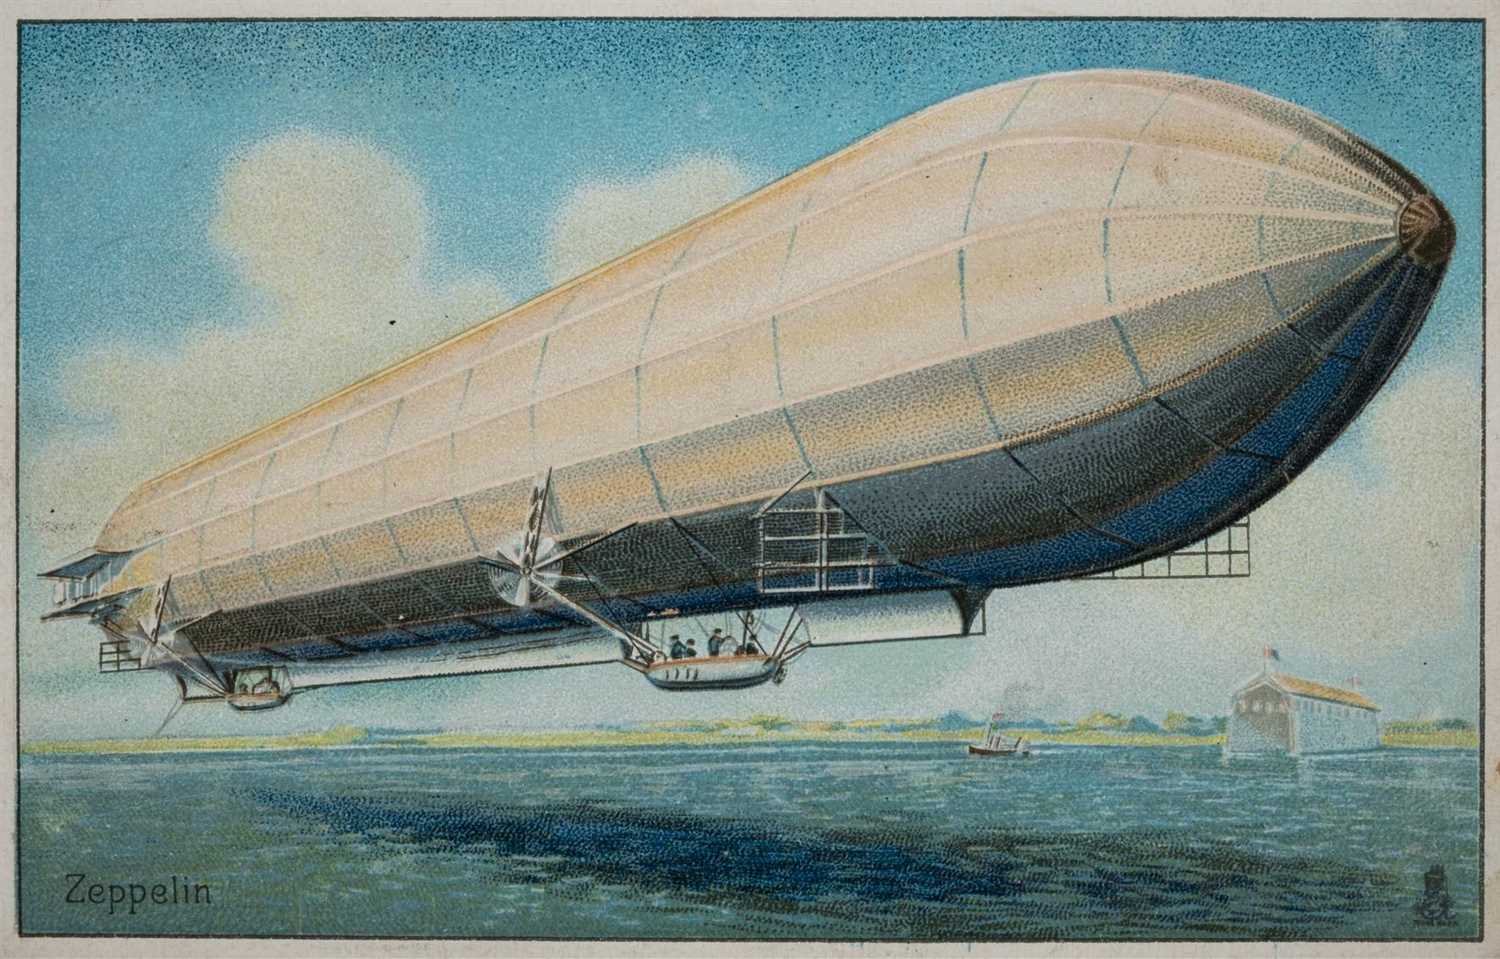 Lot 822 - Zeppelin.